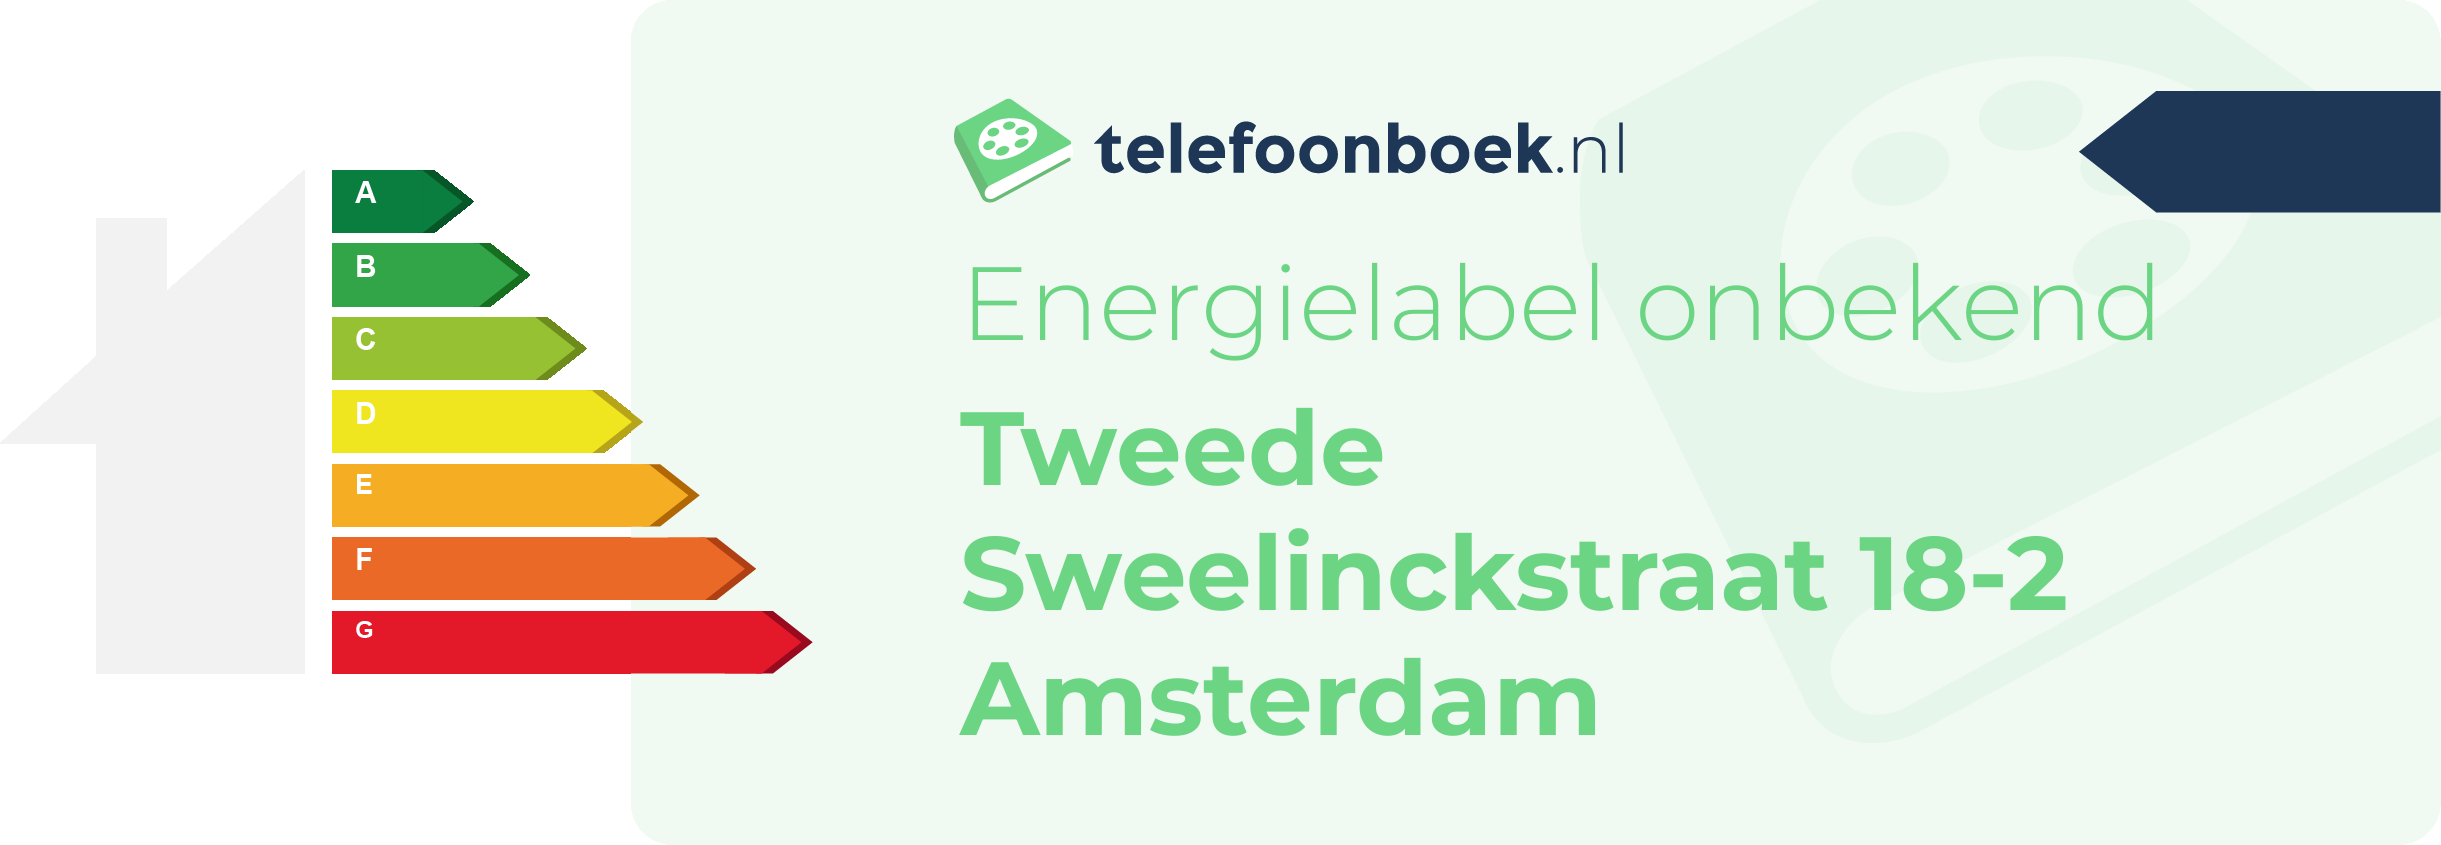 Energielabel Tweede Sweelinckstraat 18-2 Amsterdam